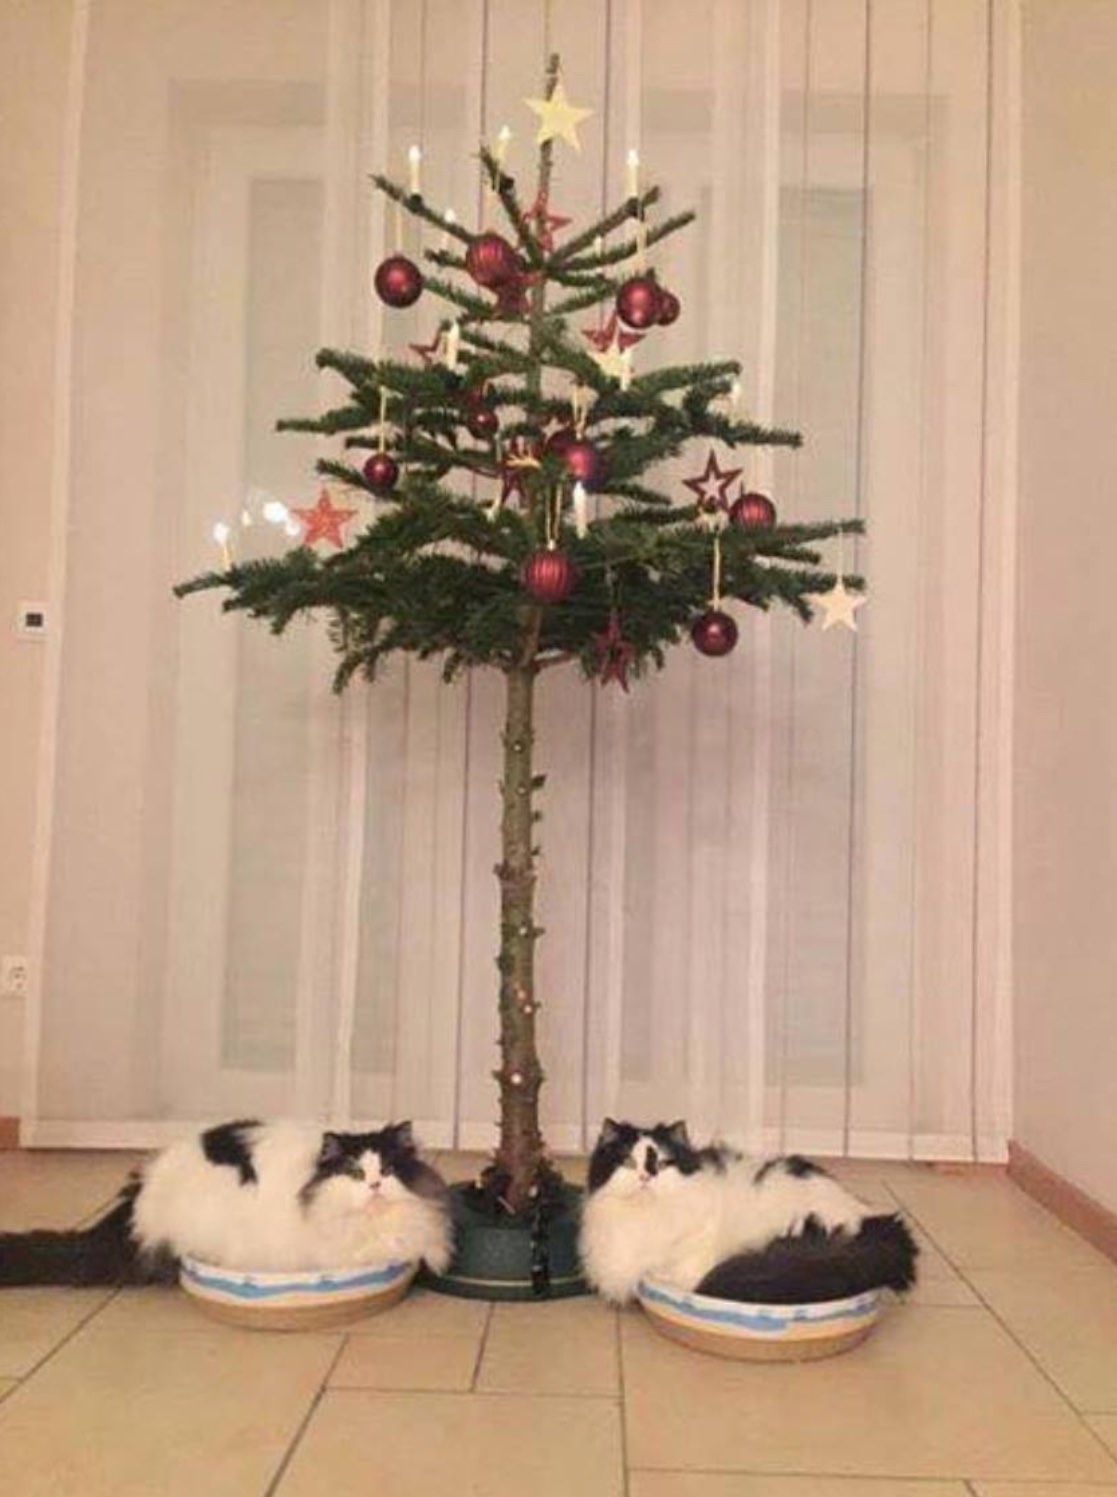 Katzensichere Weihnachtsbäume